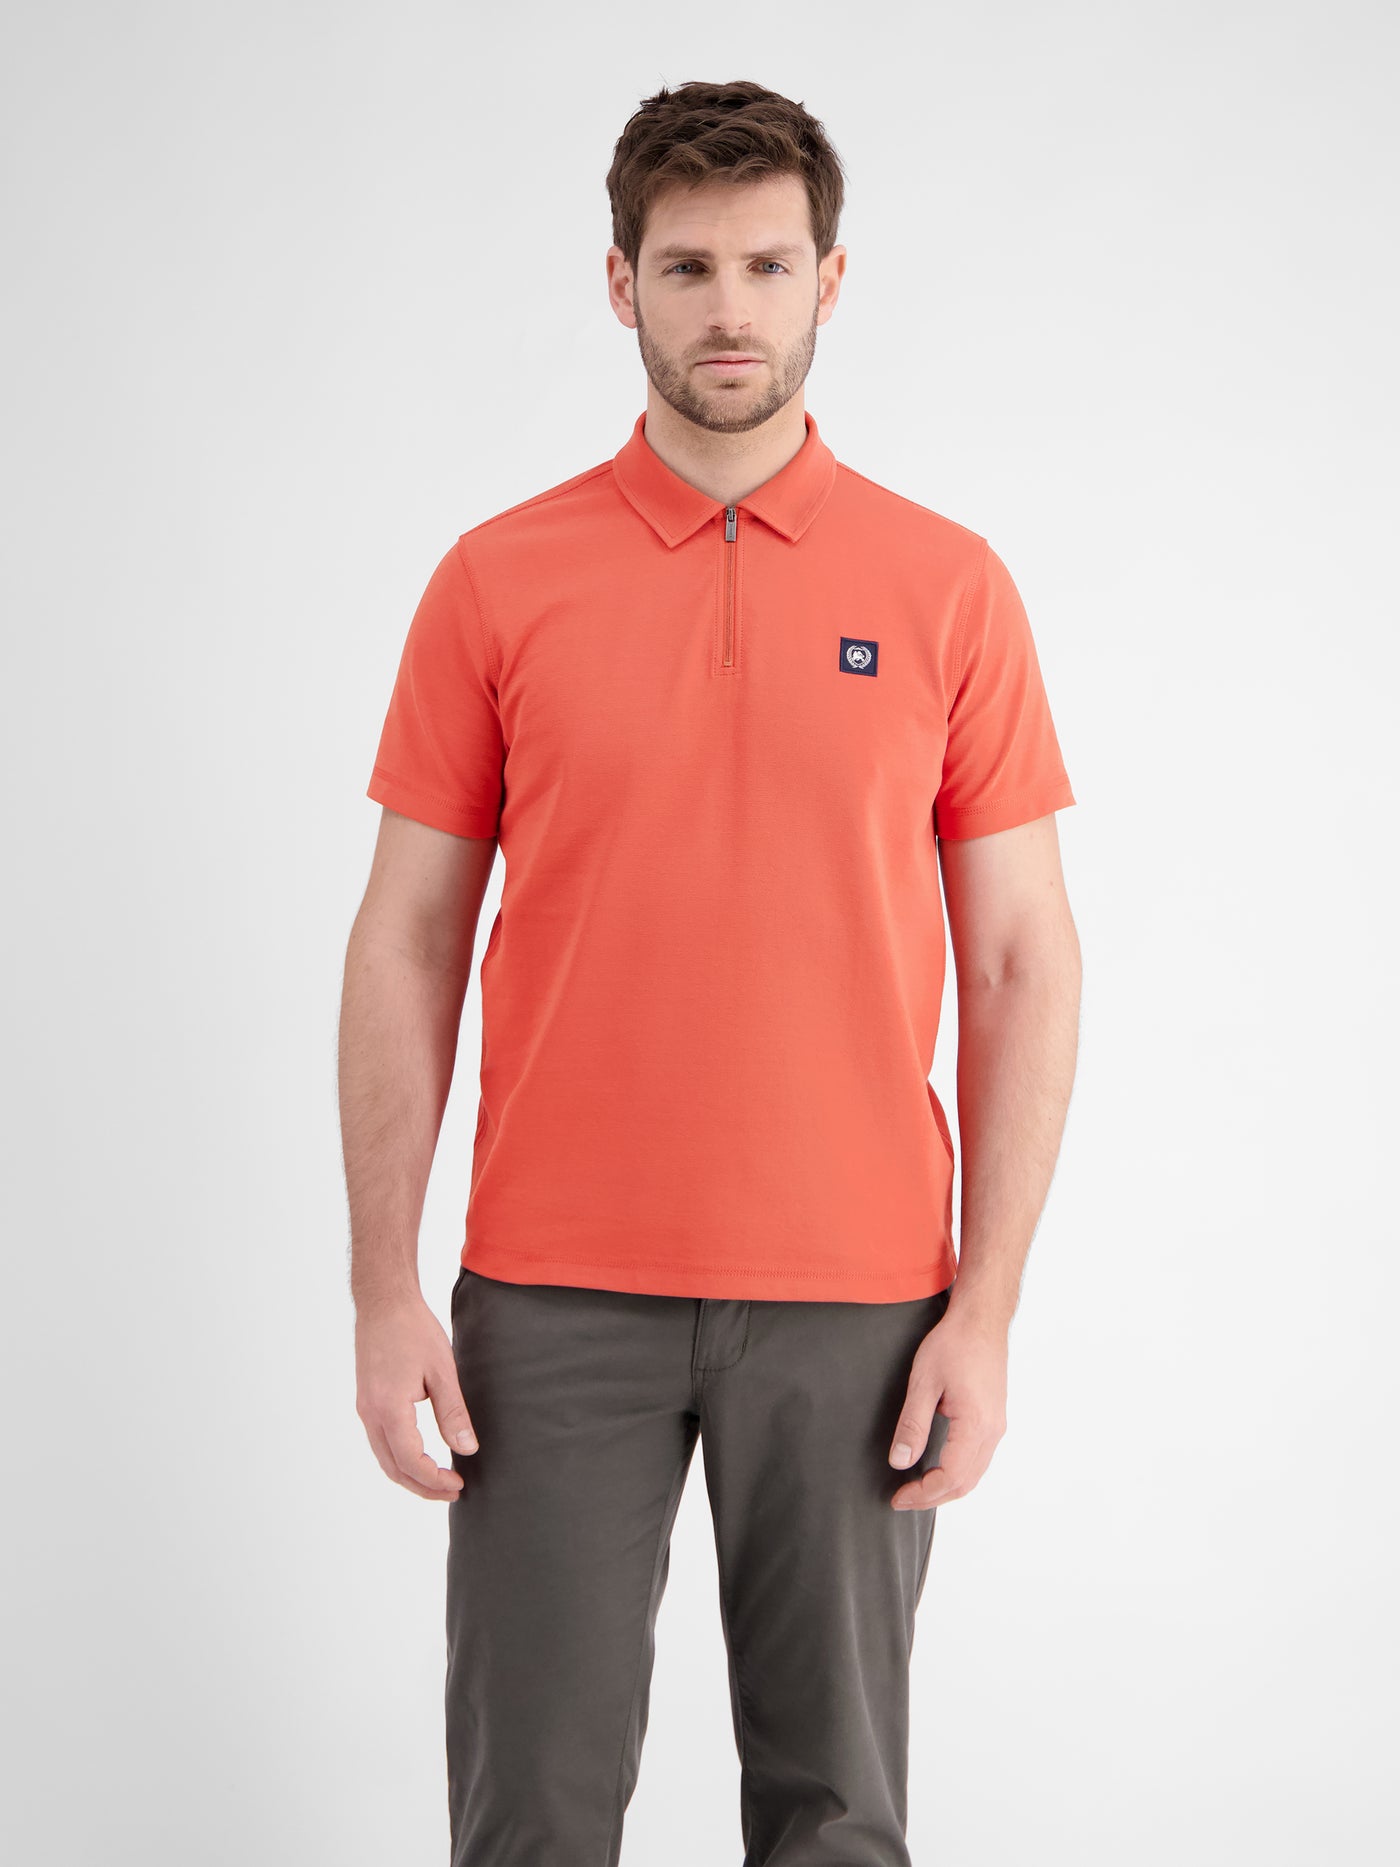 Poloshirt für Herren mit Reißverschluss in Cool & Dry Qualität